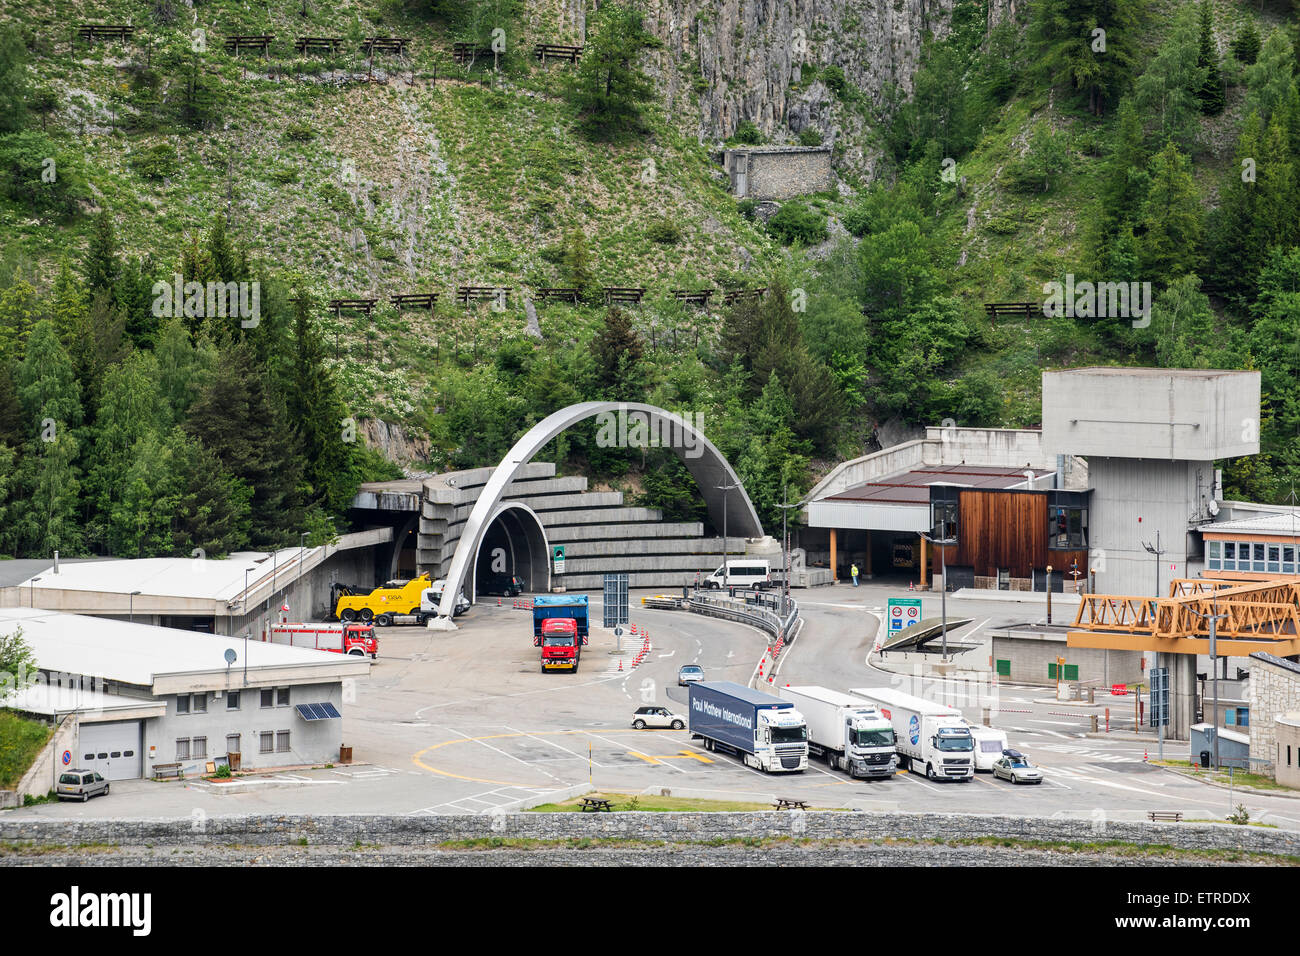 L'Italien entrée du tunnel du Mont Blanc dans les Alpes reliant Chamonix, Haute-Savoie, France avec Courmayeur, vallée d'aoste, Italie Banque D'Images